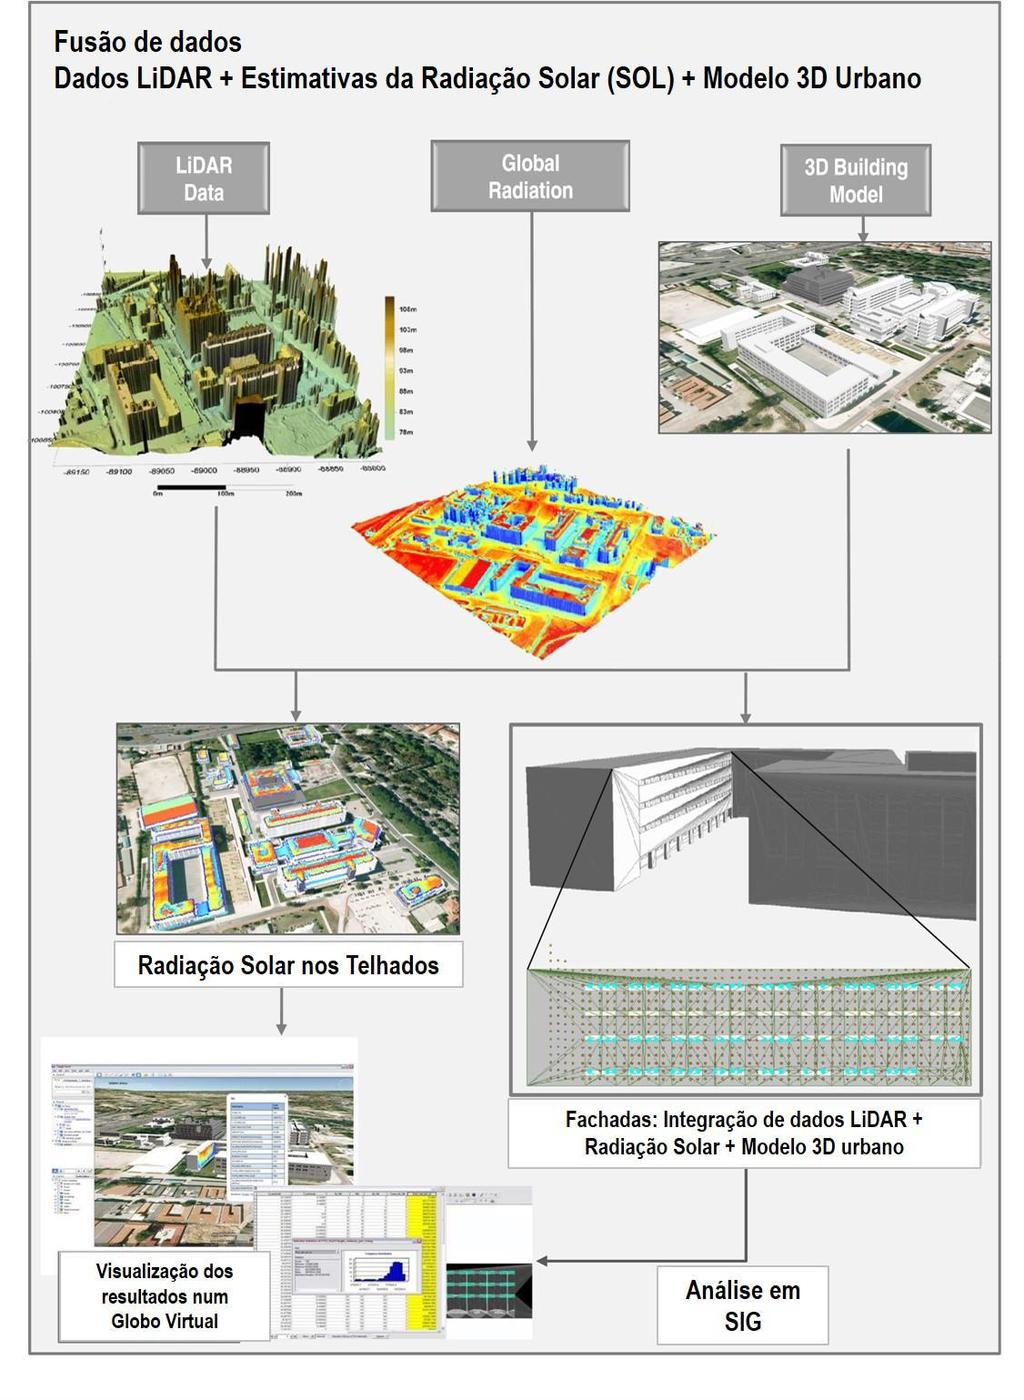 Figura 2.4: Sequência metodológica usada para a fusão de dados de radiação solar, dos dados LiDAR e do modelo 3D urbano com vista à análise e representação do potencial solar em edifícios urbanos.